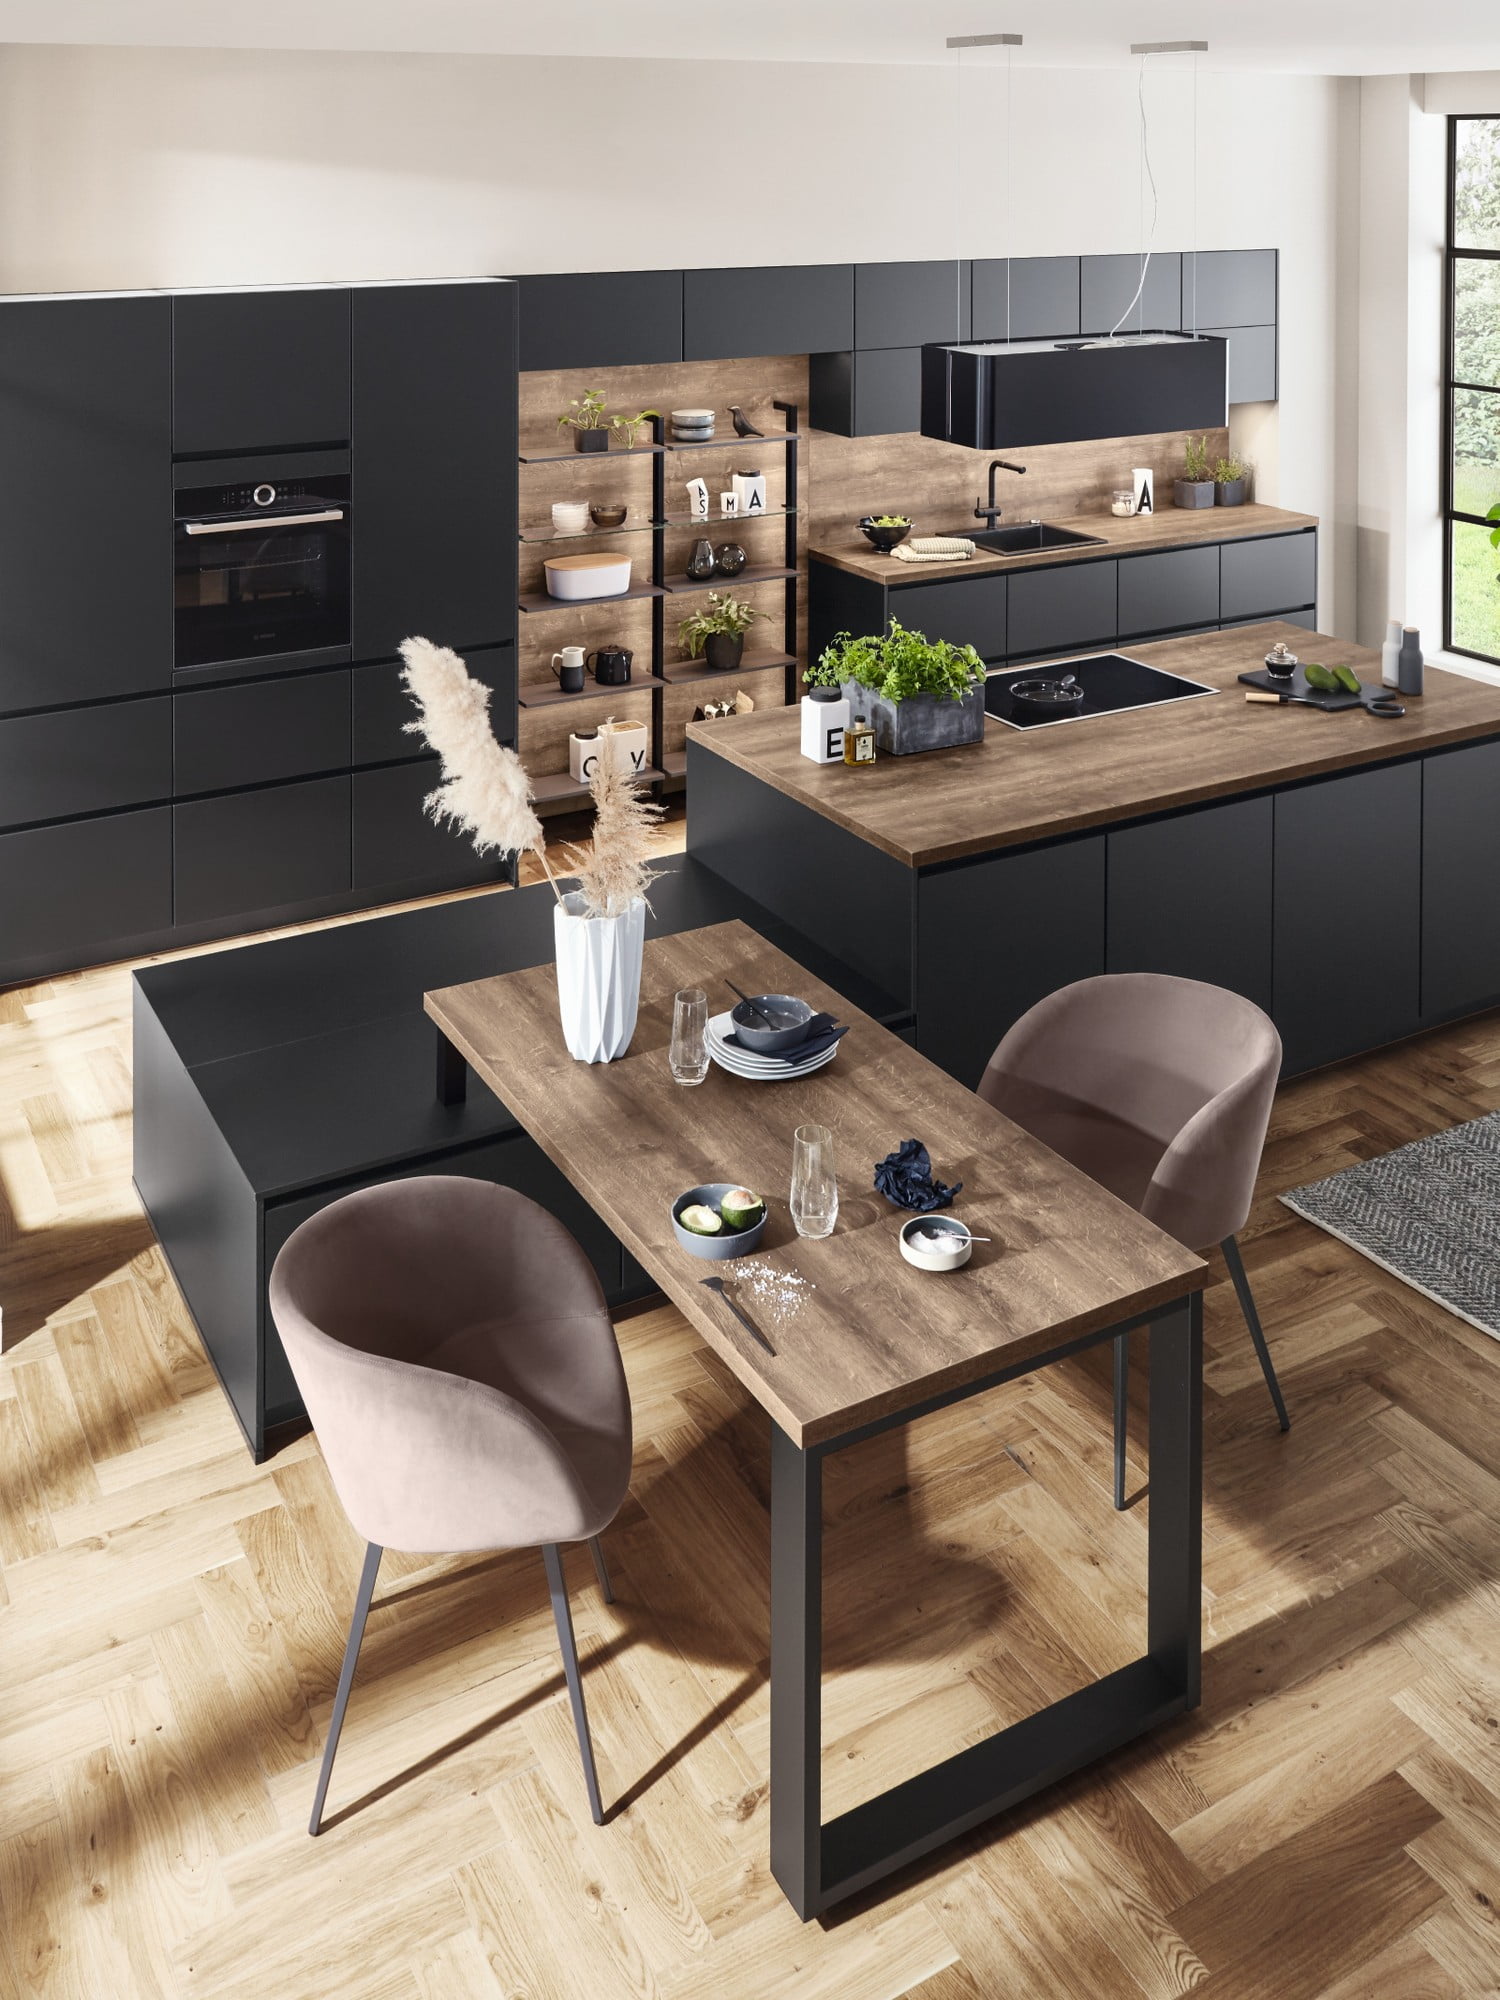 Černá kuchyňská linka se hodí do větší kuchyně, ideálně spojené s obývacím pokojem nebo jídelnou.